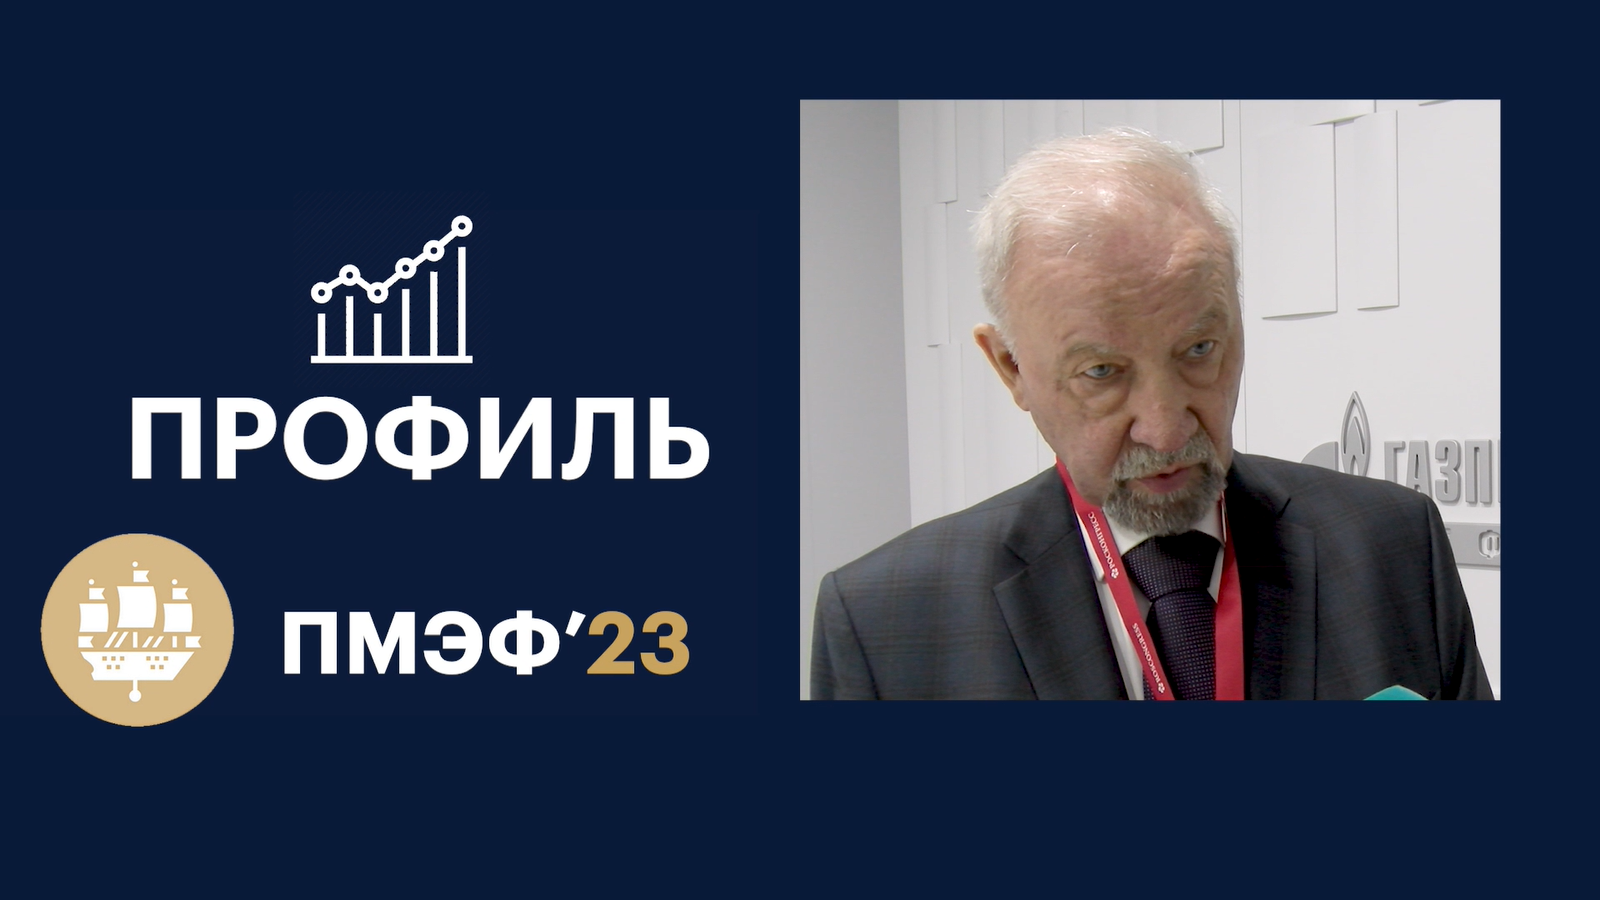 Виктор Иванов: «Главная задача — помогать «Газпром нефть» ресурсами»